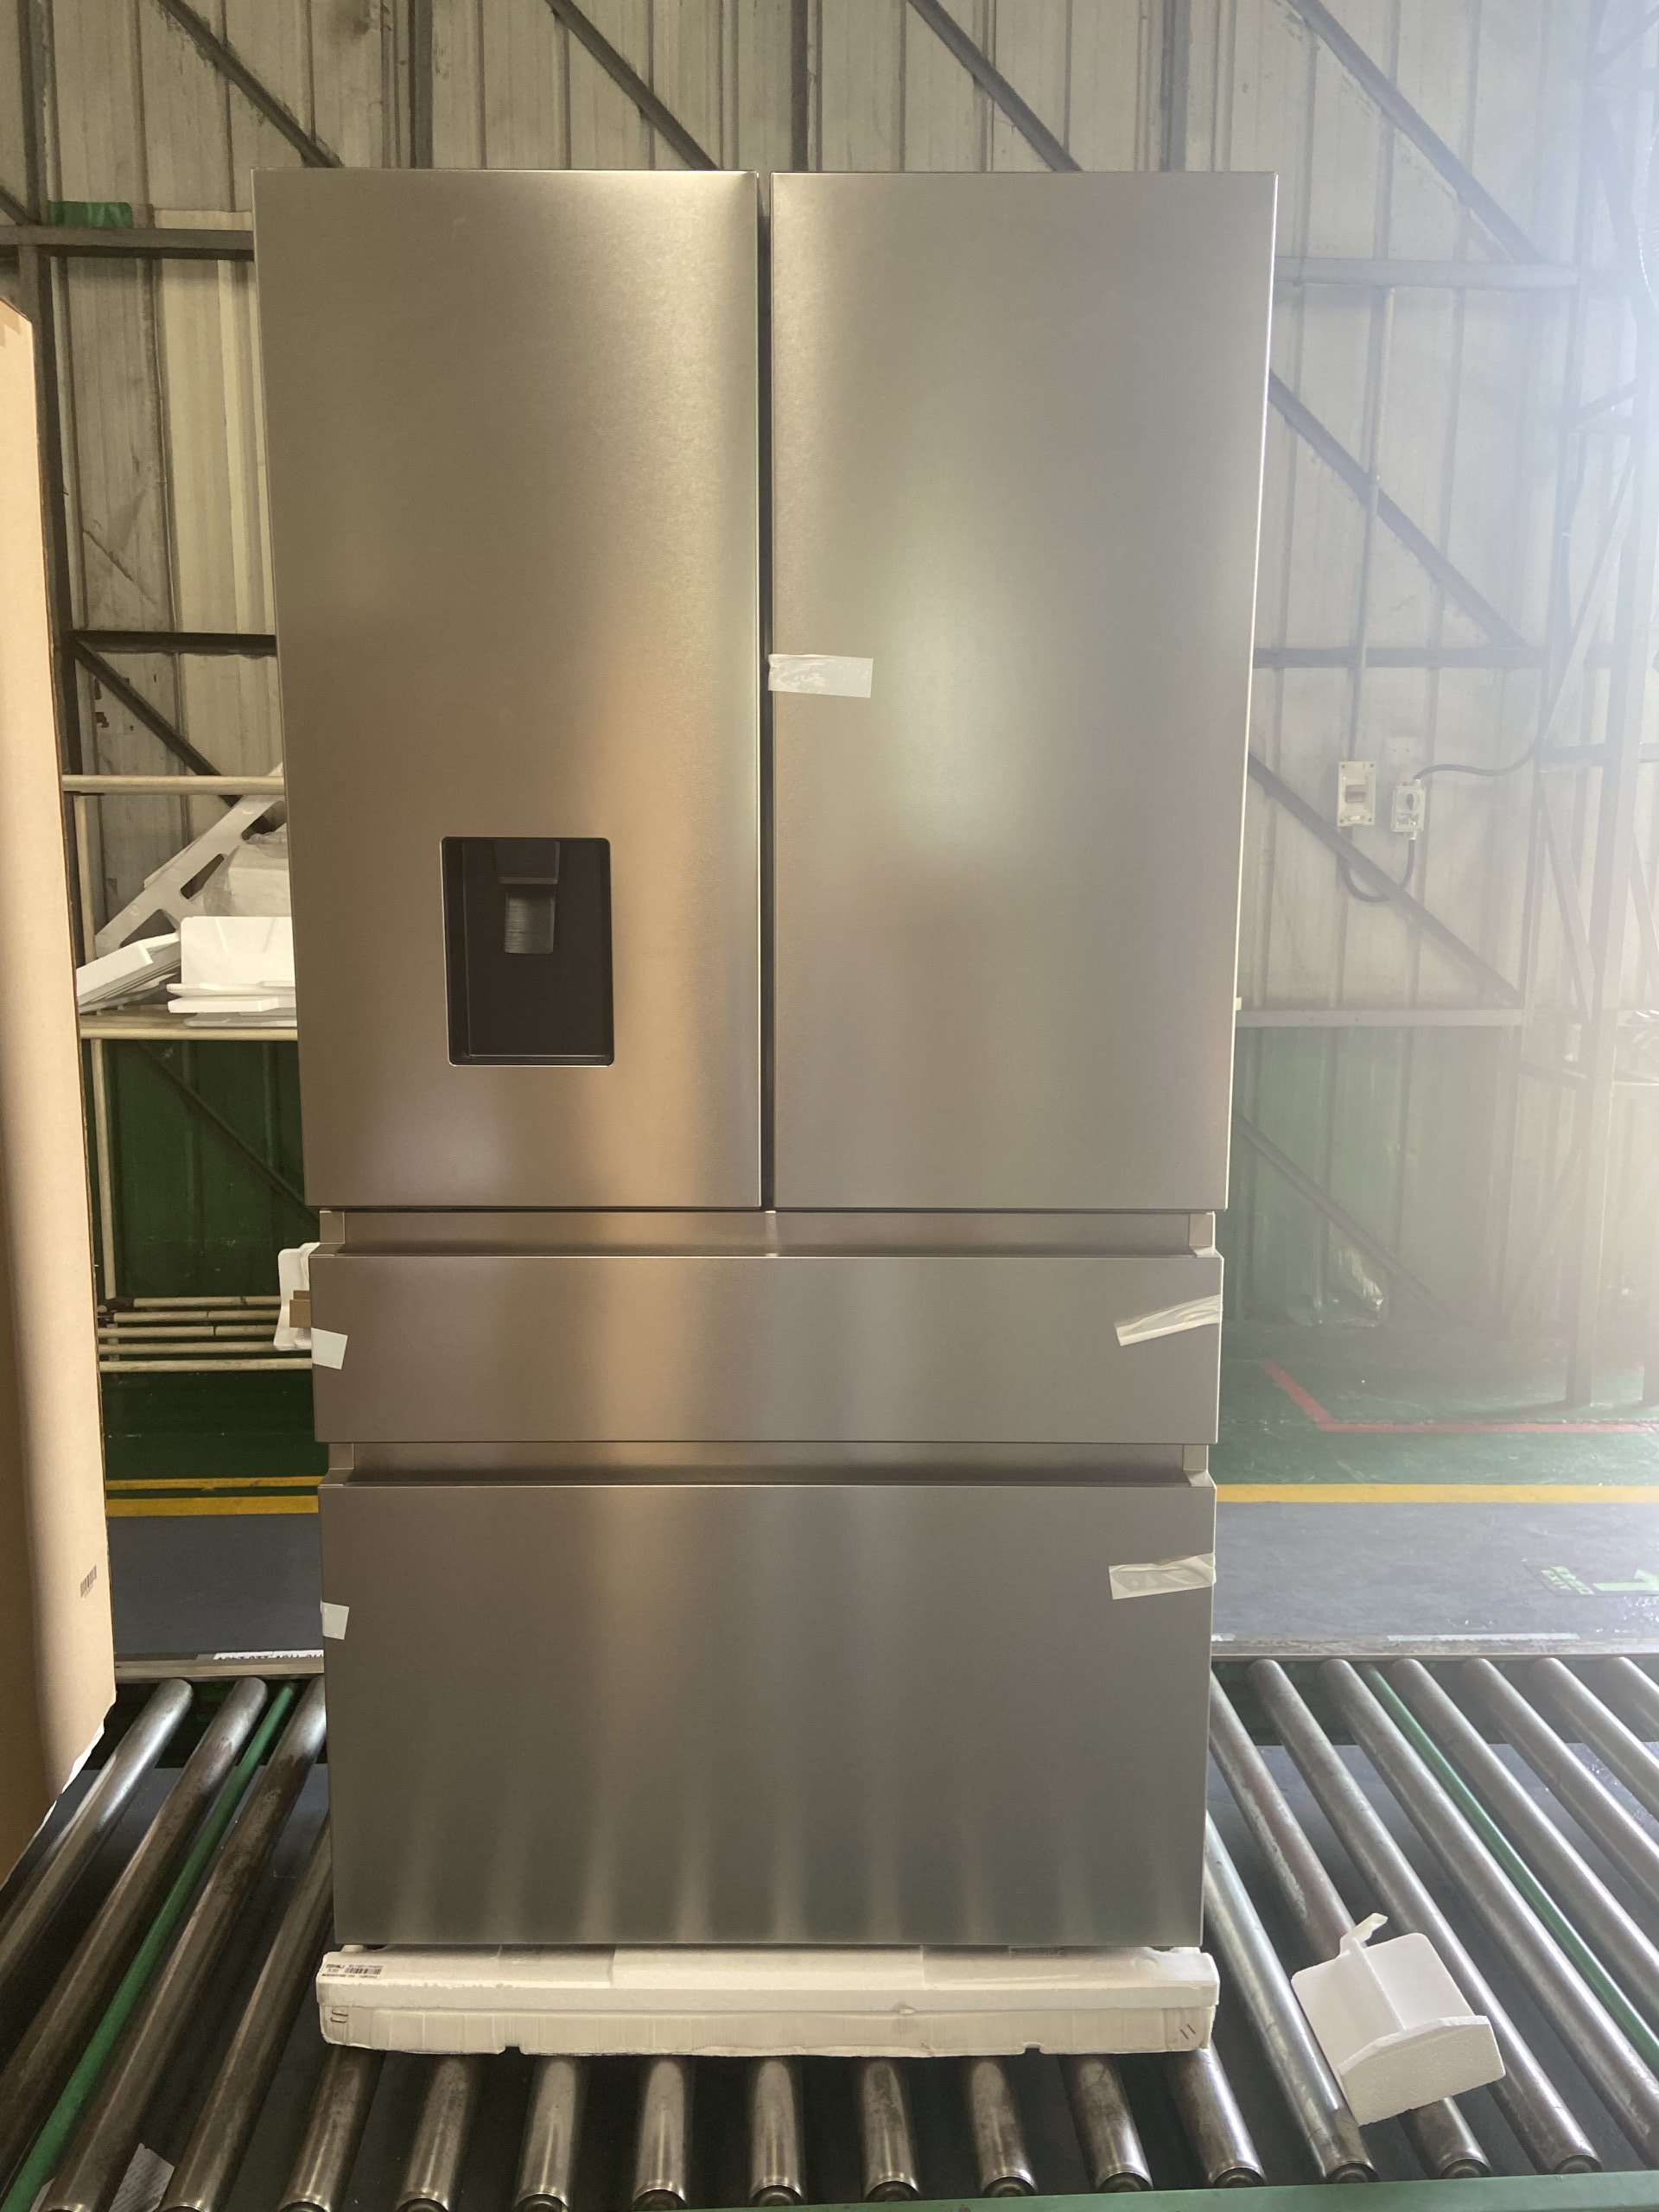 Smeta french door fridge large cargo photo